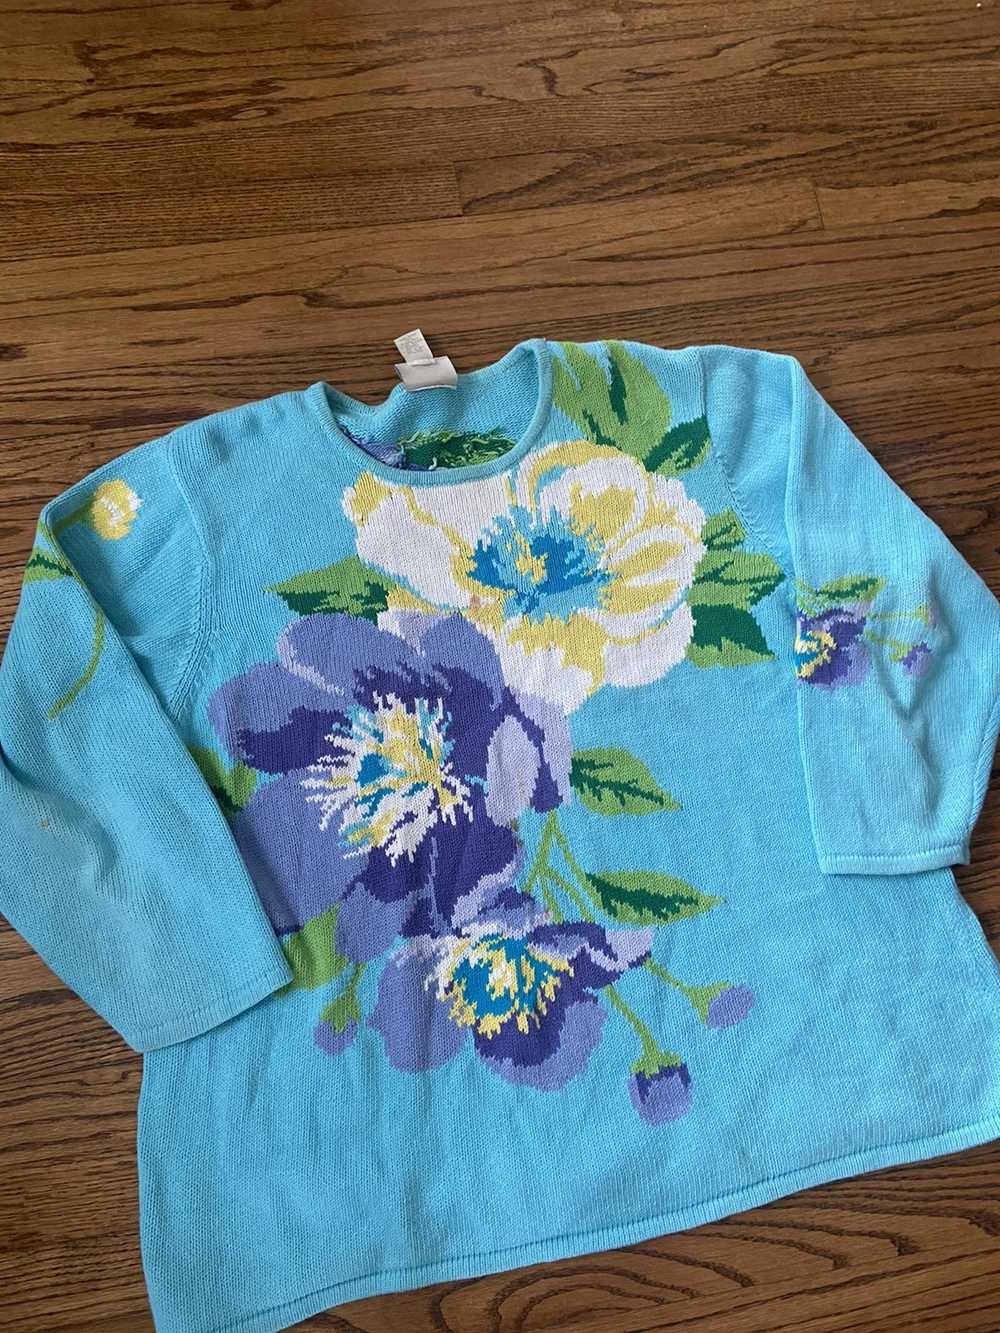 Vintage Vintage knit flower sweater - image 3